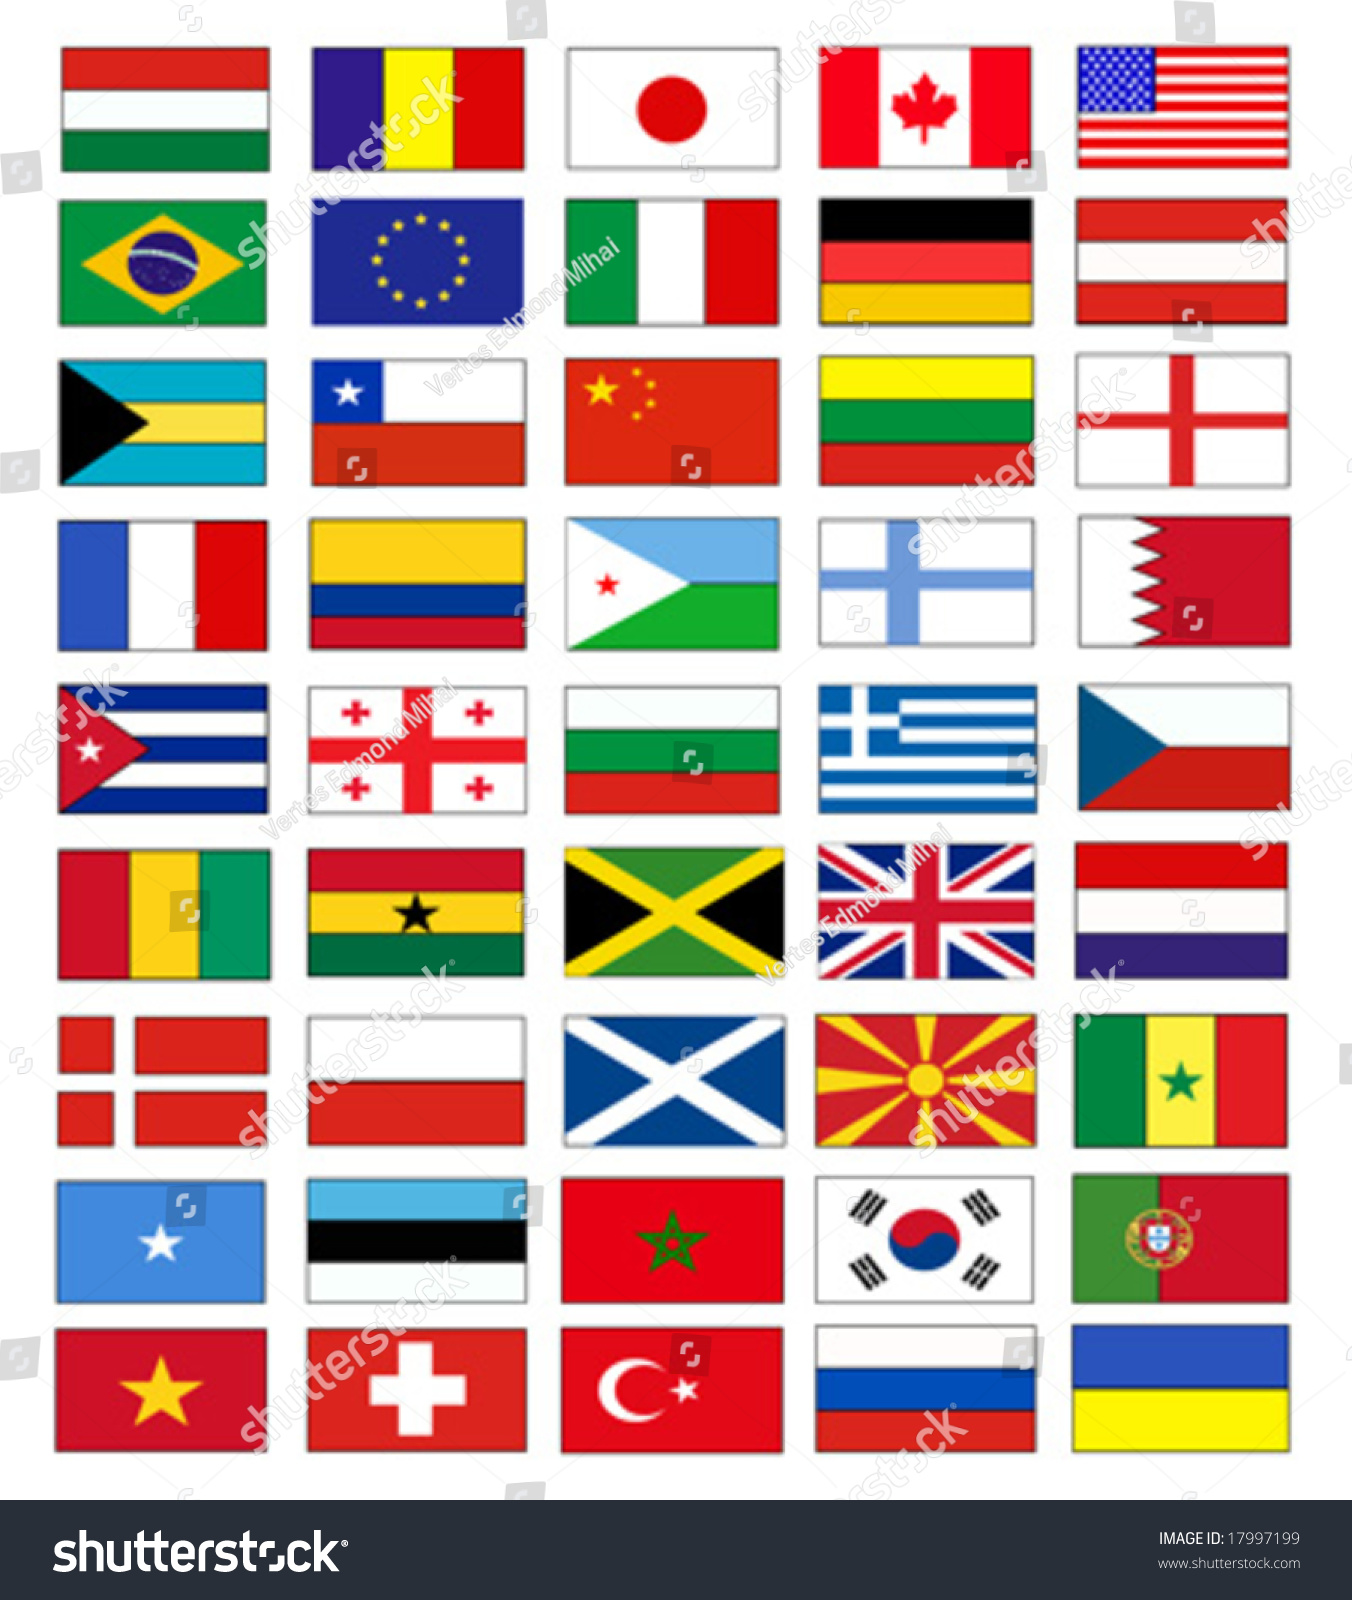 Download Edit Vectors Free Online - Vector flags | Shutterstock Editor